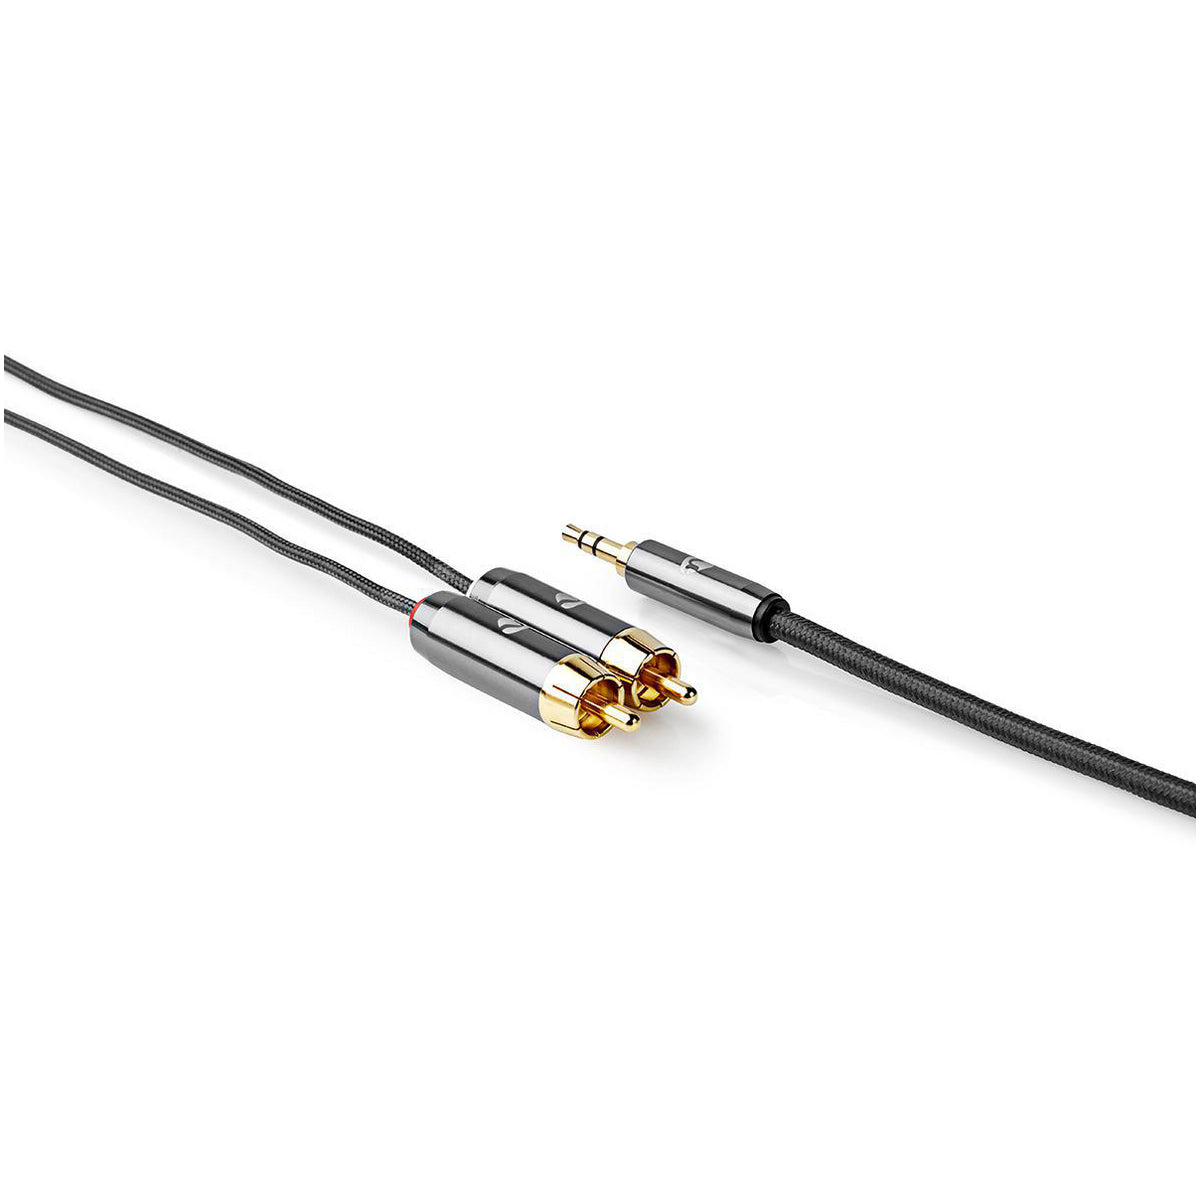 Stereo-Audiokabel | 3.5 mm Stecker | 2x RCA Stecker | Vergoldet | 1.00 m | Rund | Grau / Gun Metal Grau | Verpackung mit Sichtfenster